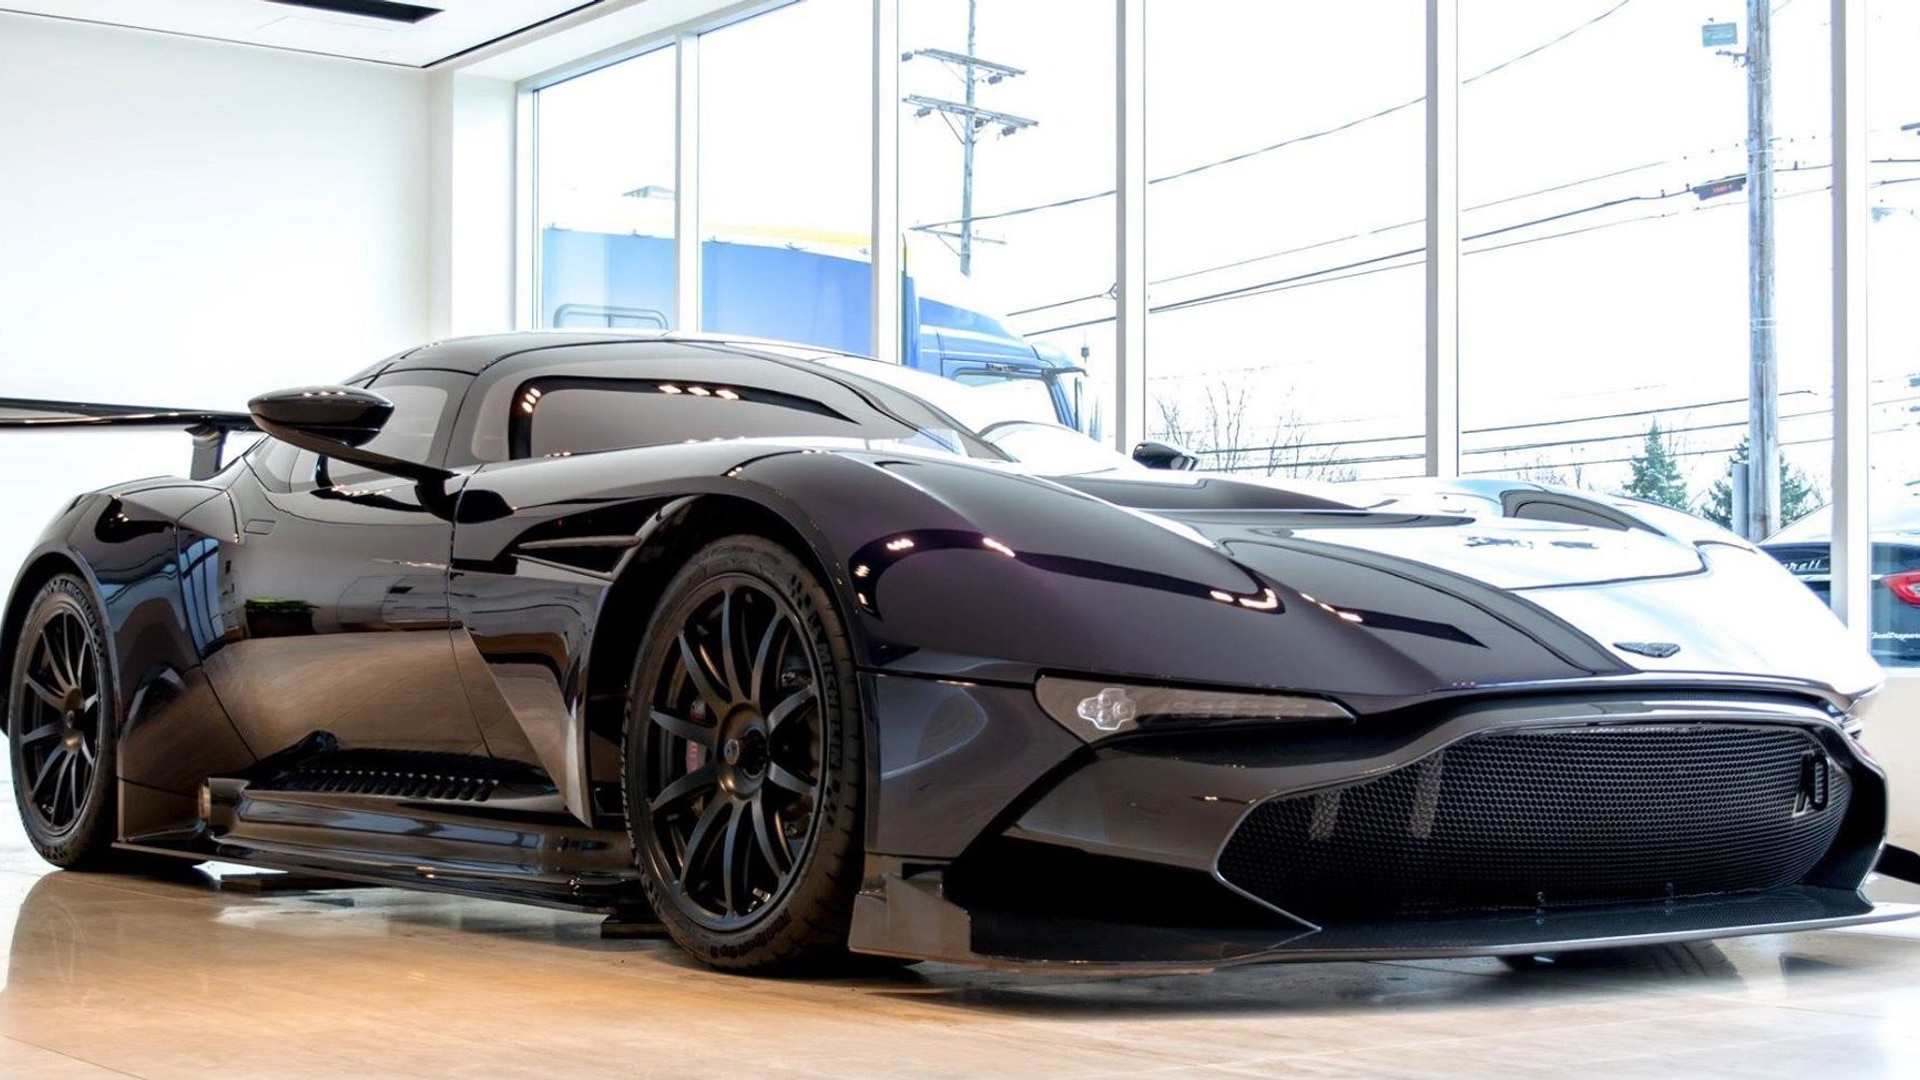 Aston Martin Vulcan - Image via Aston Martin Cleveland